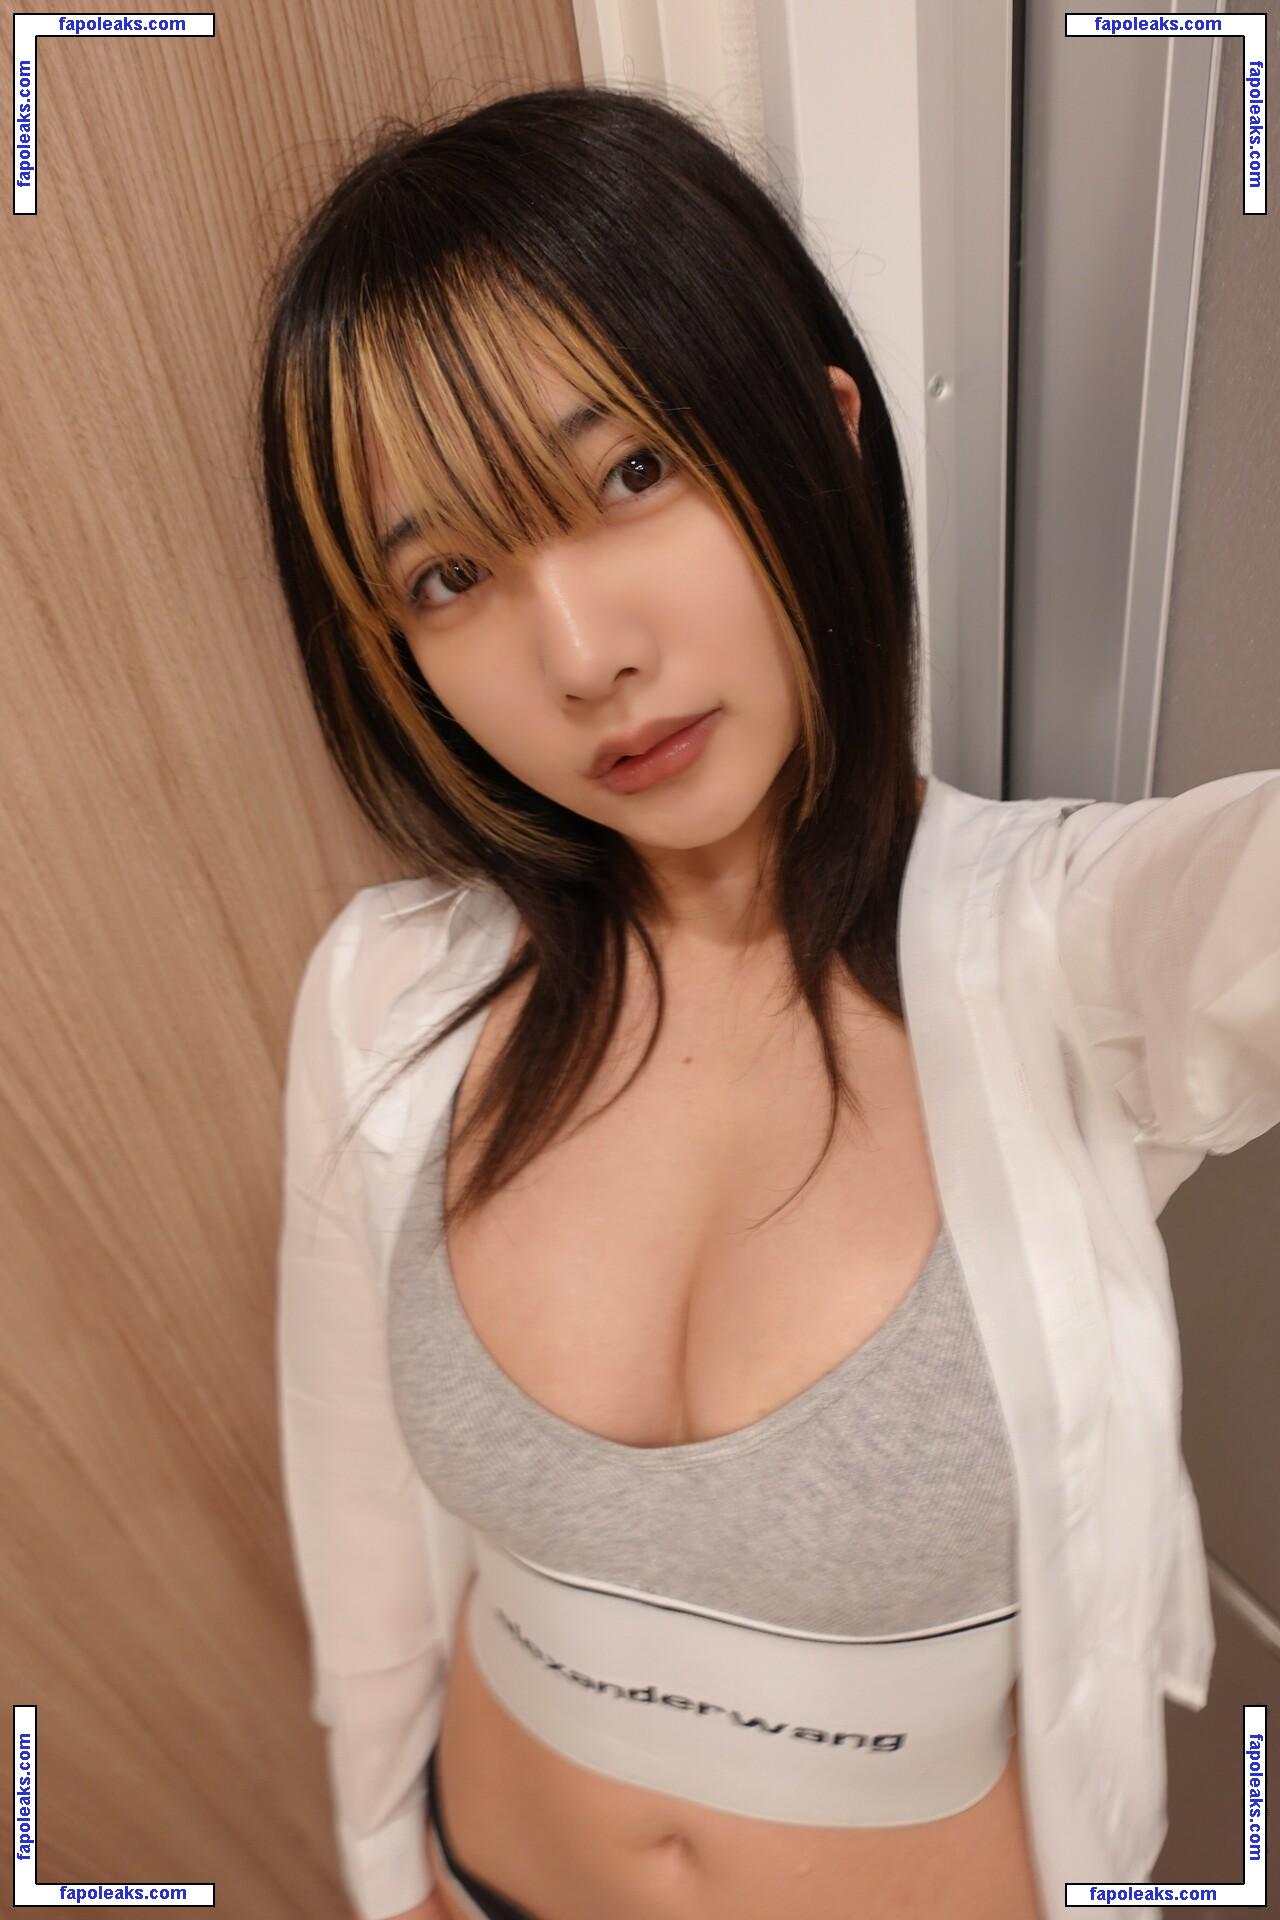 Yuno Mizusawa / mizuyuno_ / mizuyunosan_ / yunocy nude photo #0077 from OnlyFans